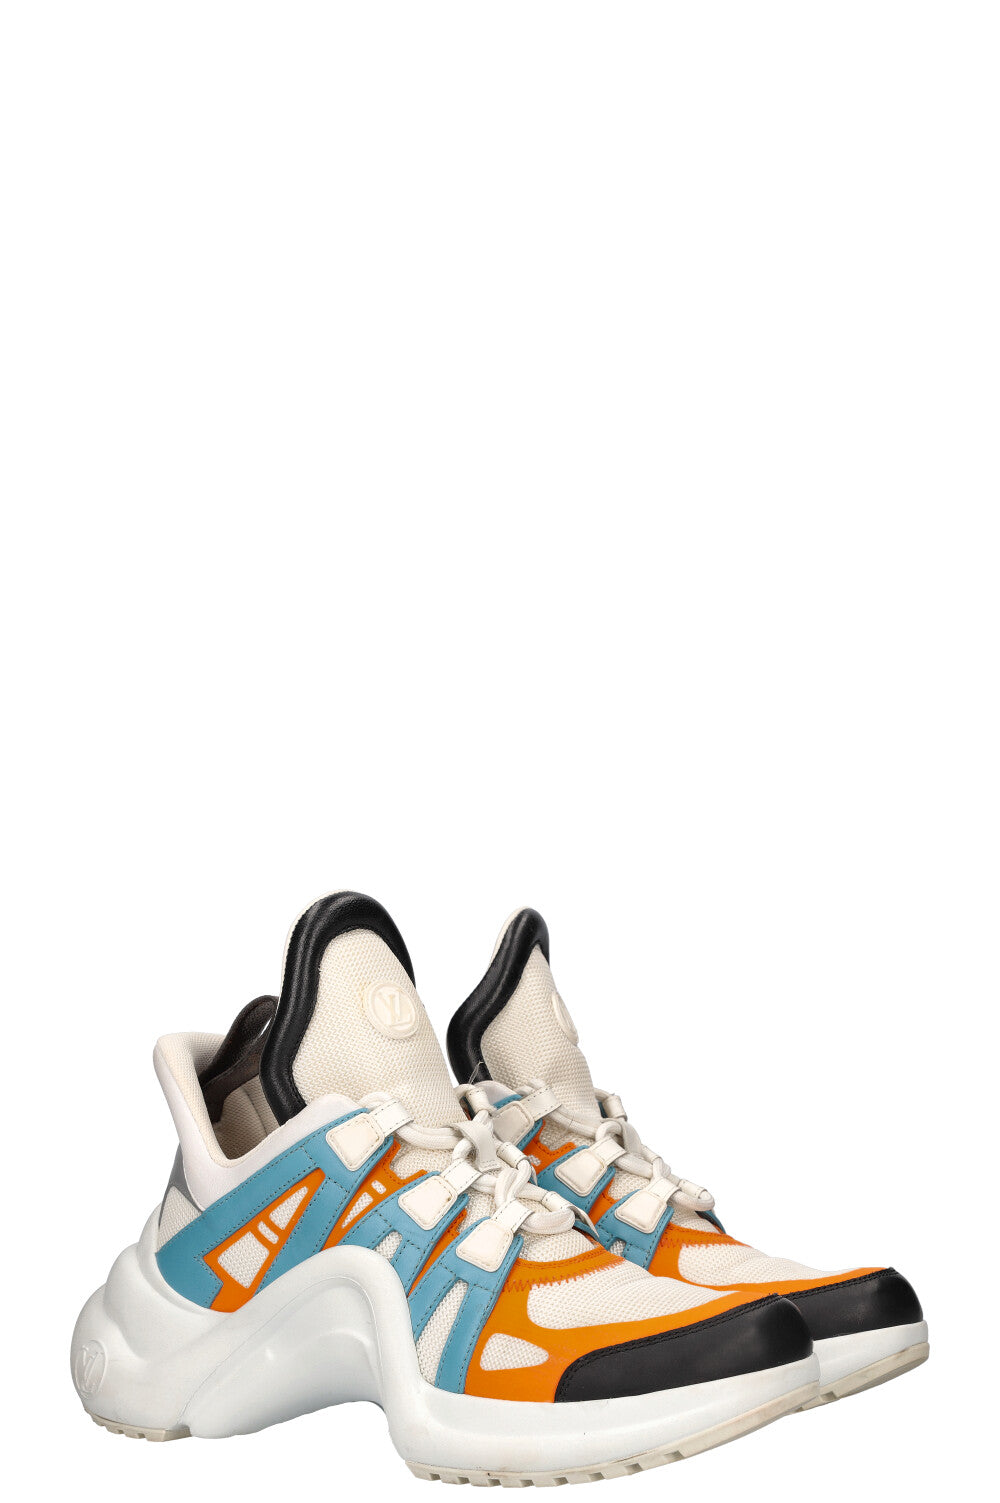 LOUIS VUITTON Archlight Sneakers Orange Blue